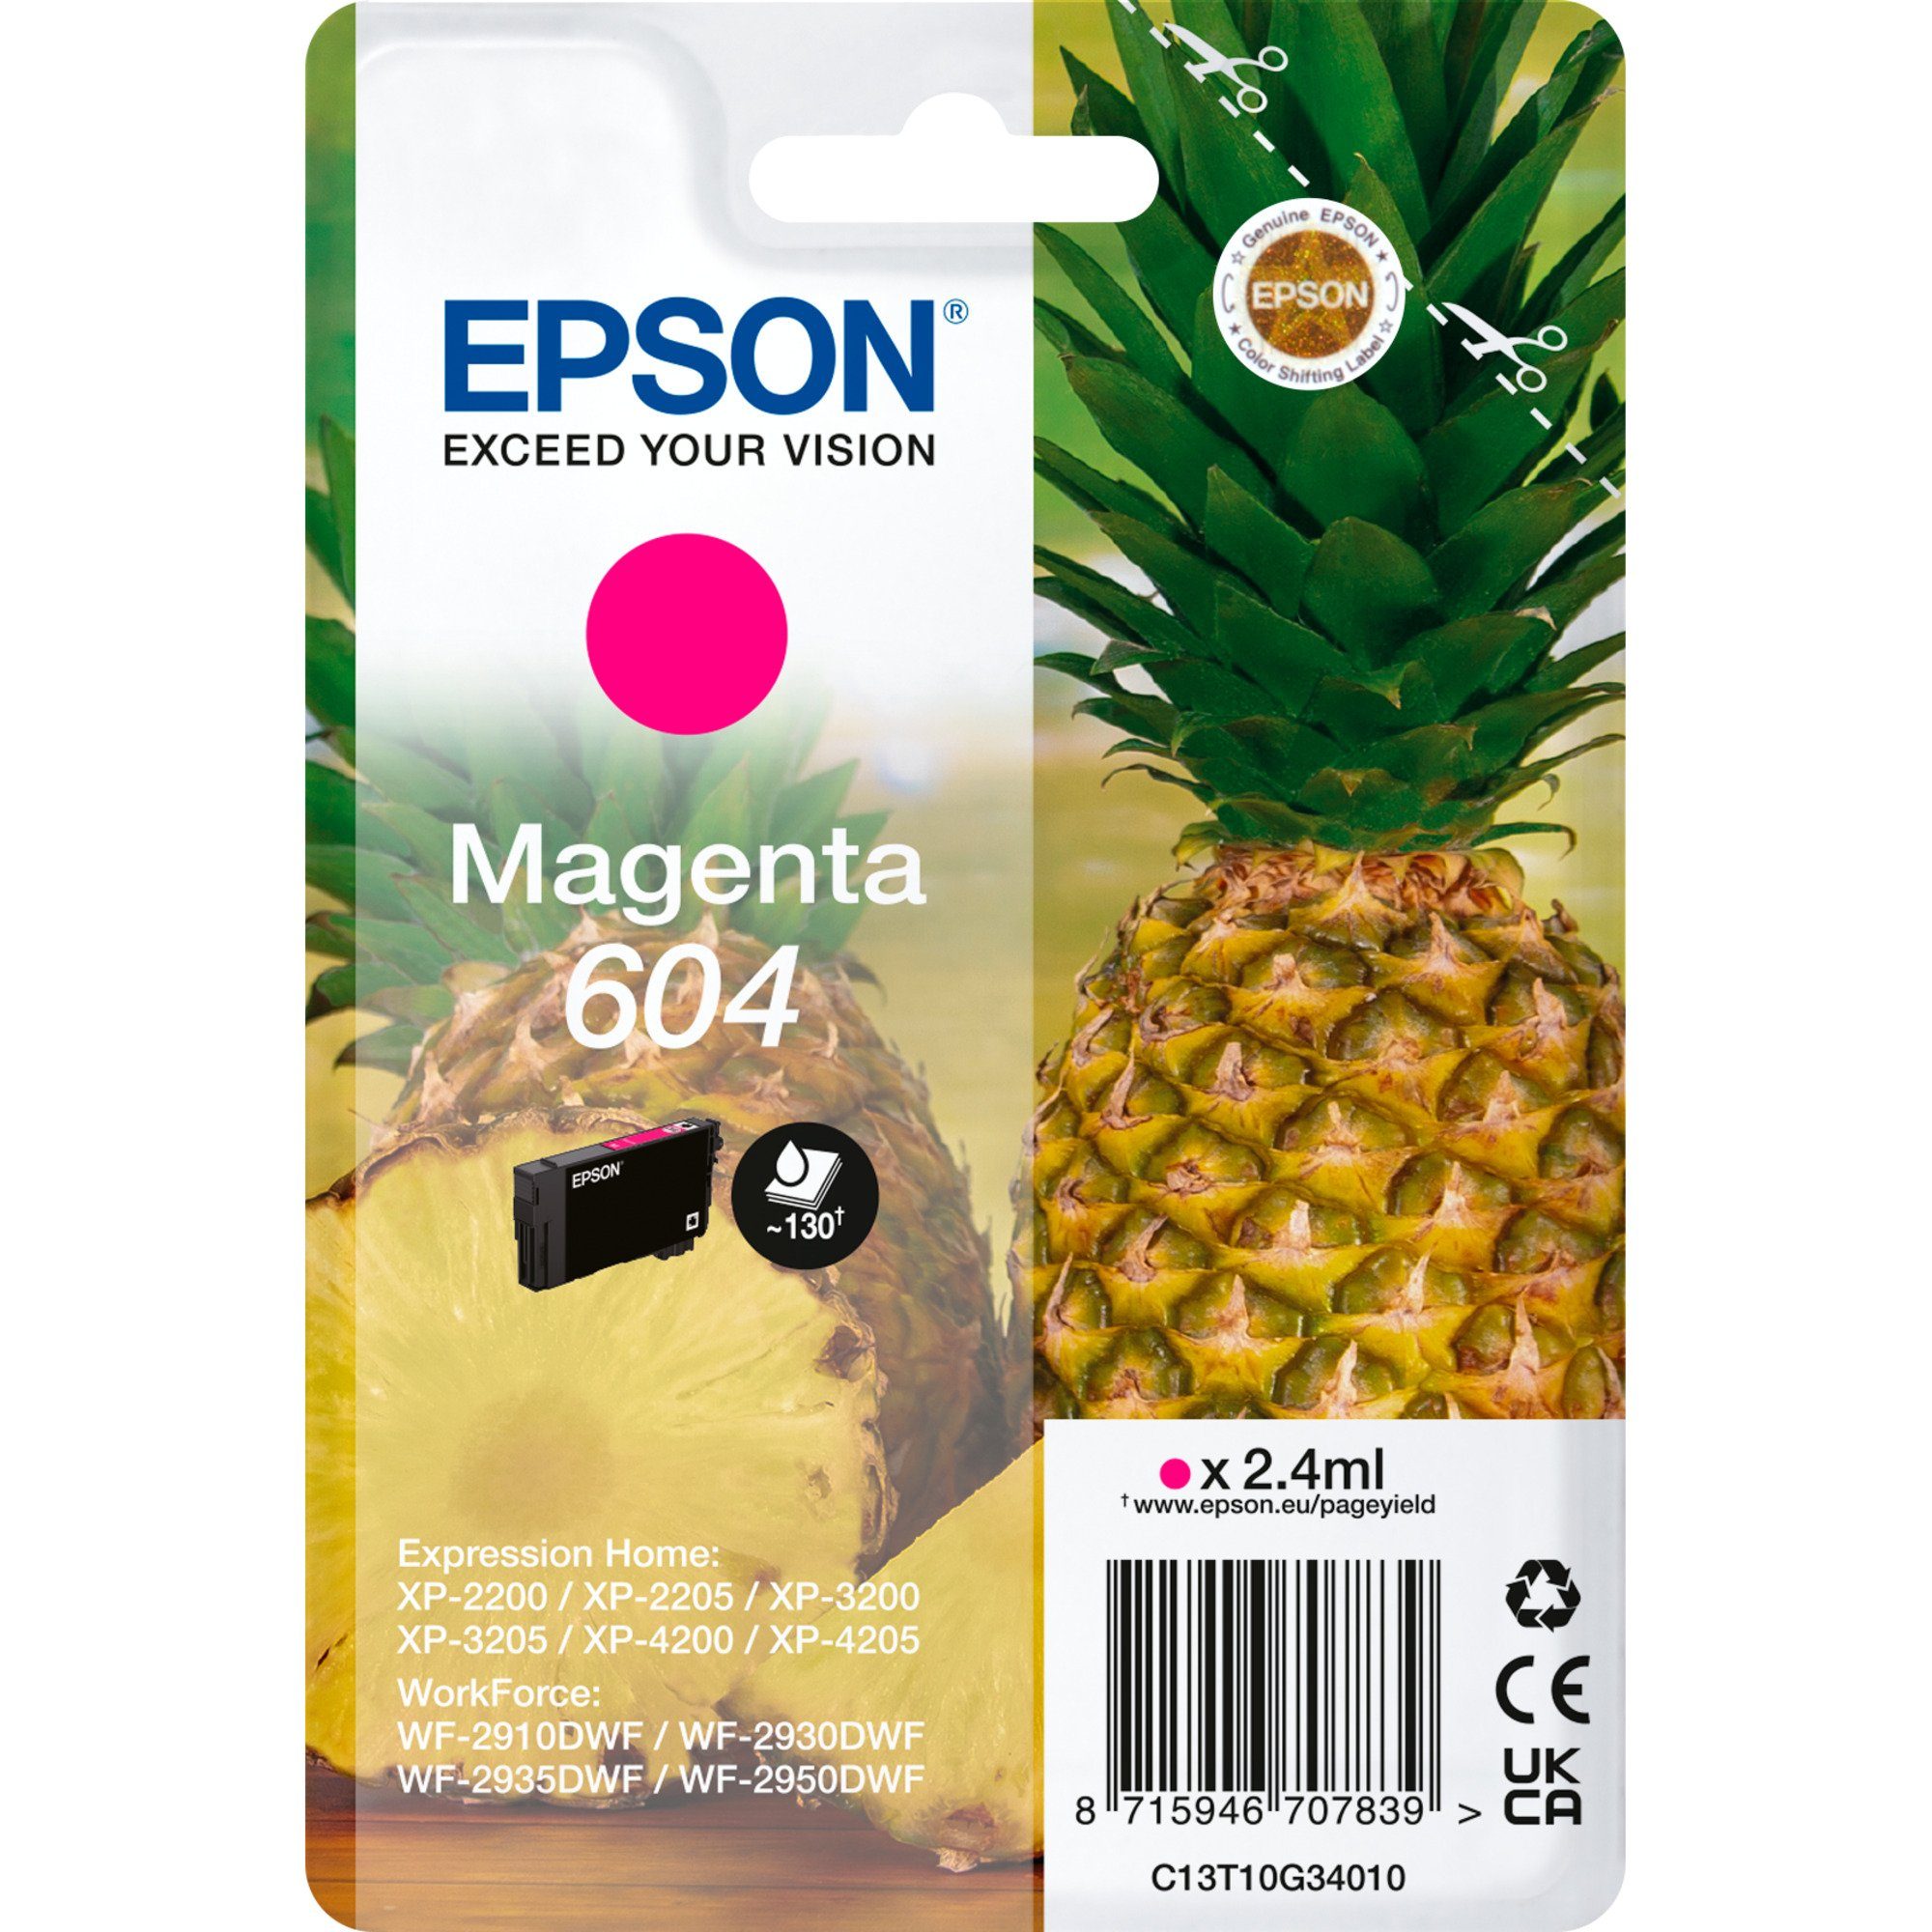 Epson Epson Tinte magenta 604 (C13T10G34010) Tintenpatrone